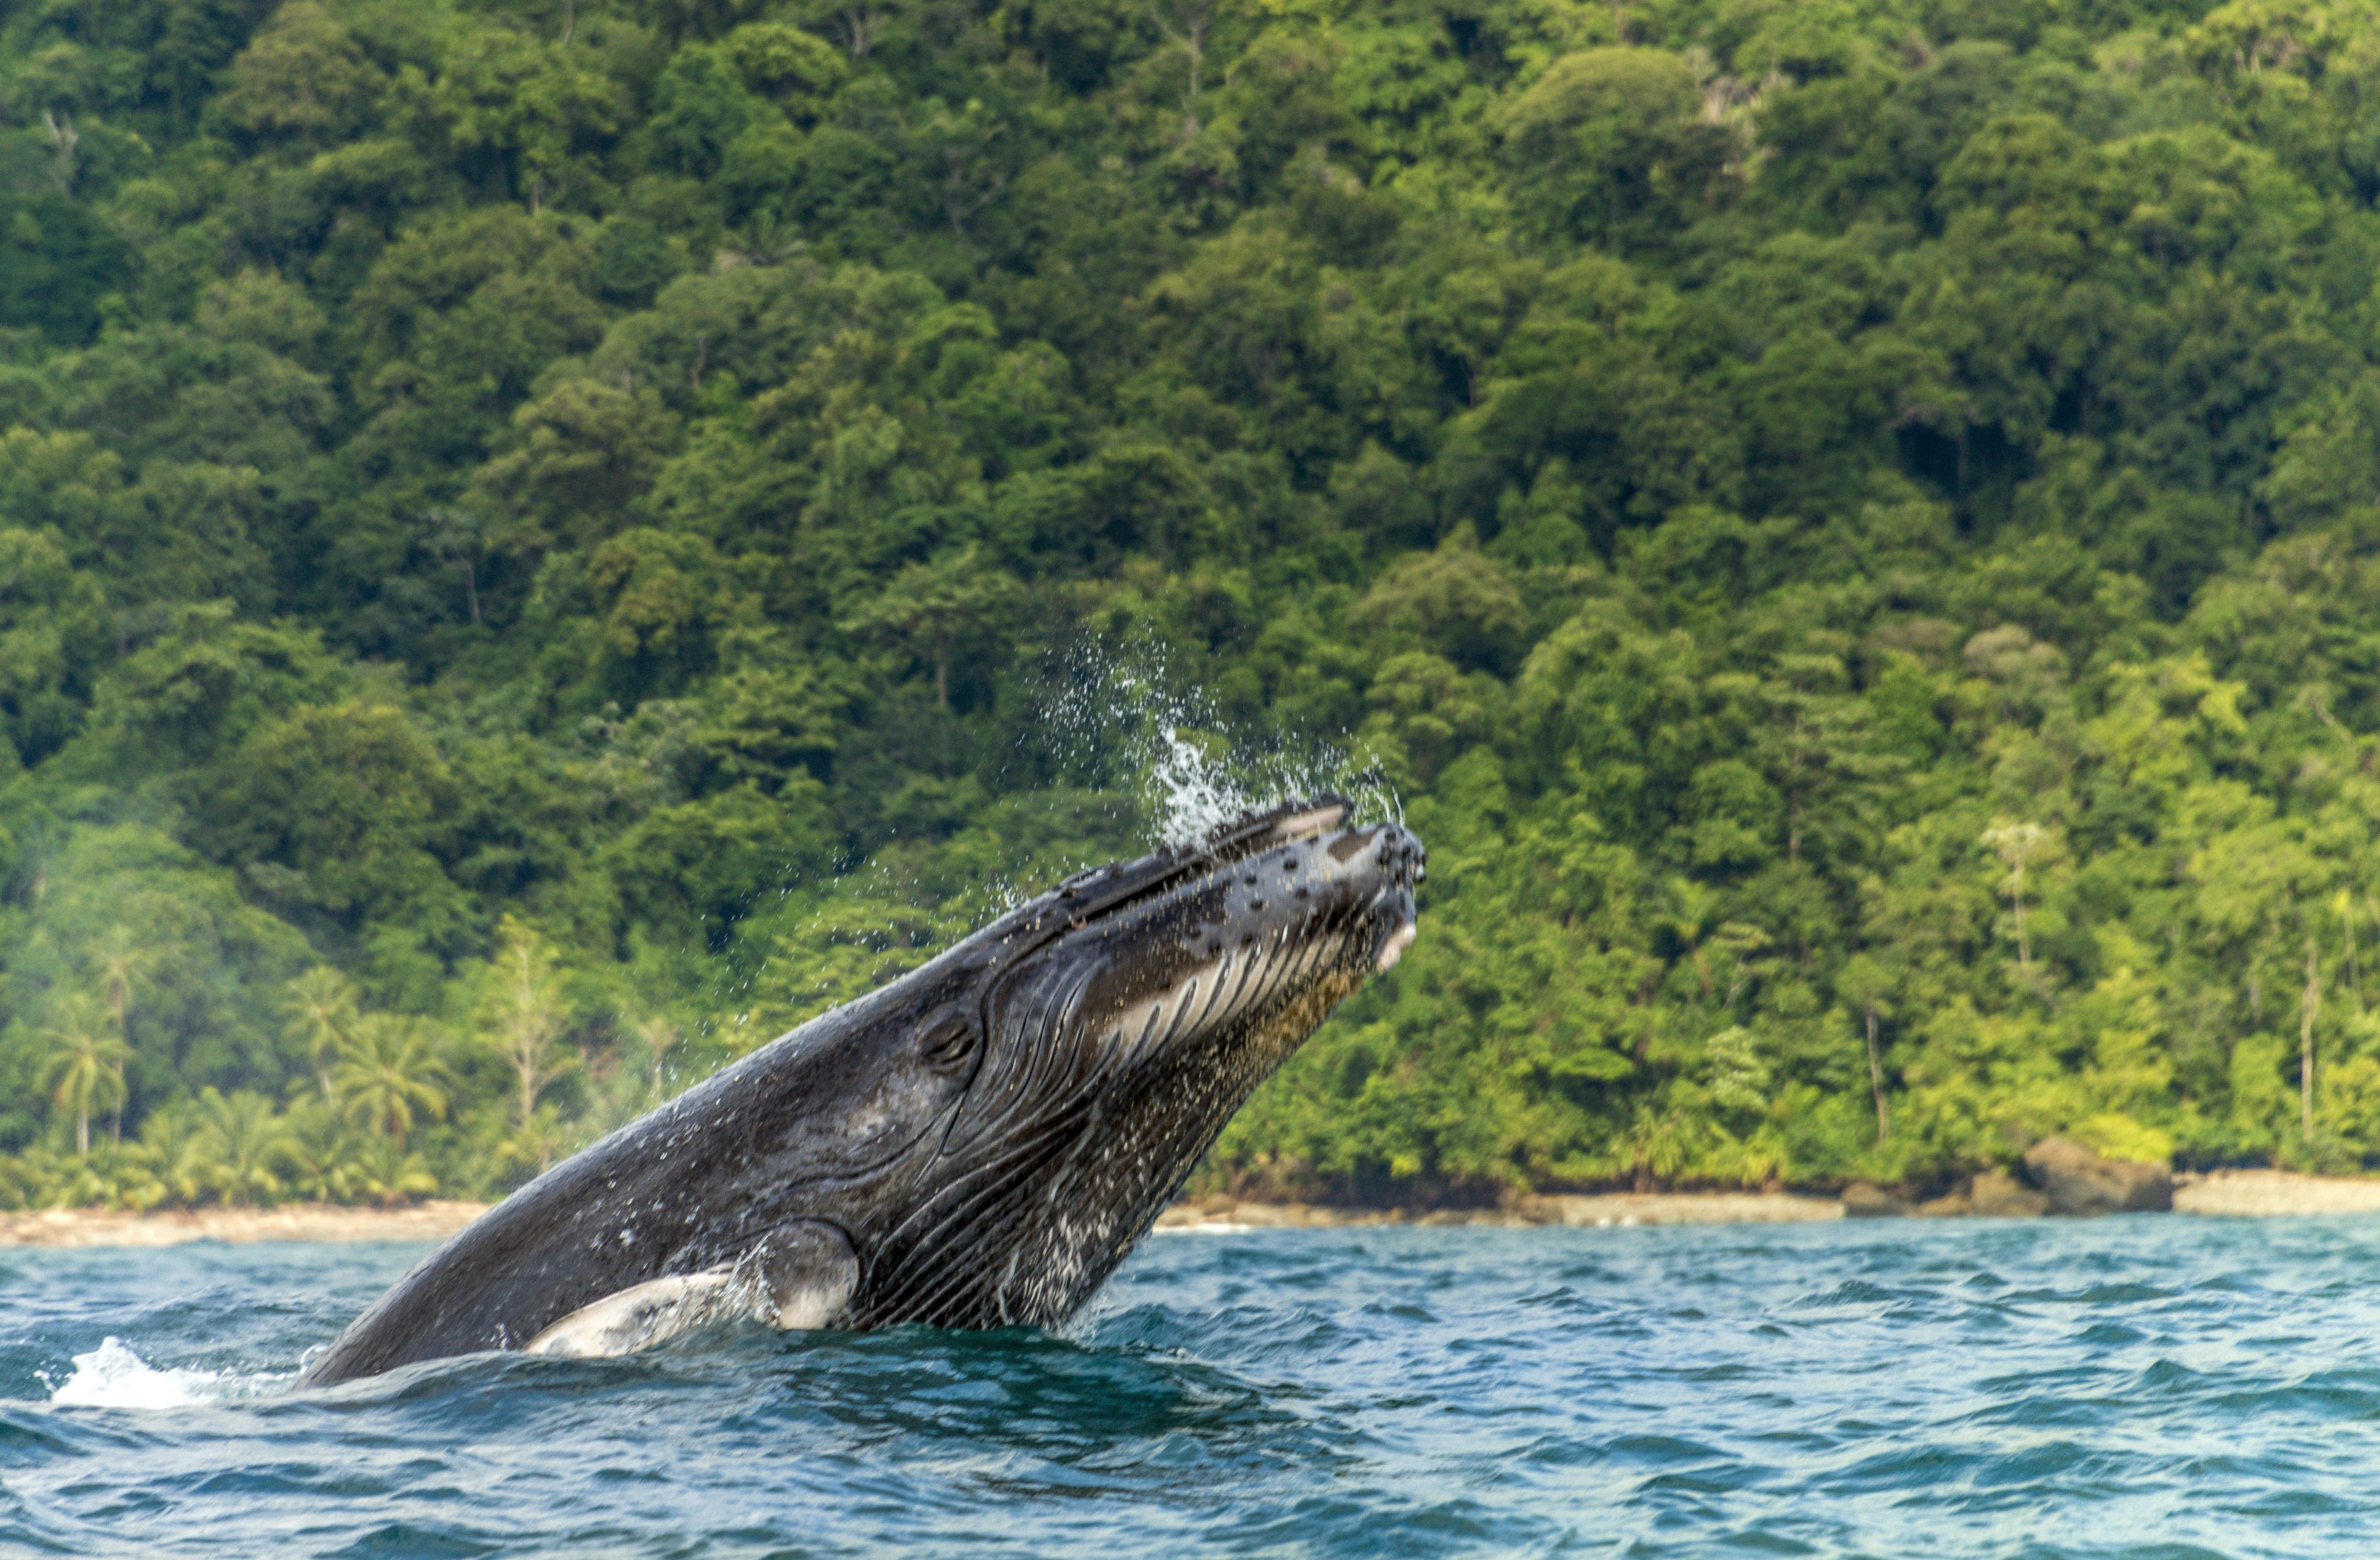 Fotografía cedida por el Ministerio de Ambiente de Colombia fechada en septiembre de 2014 que muestra ballenas jorobadas en el departamento del Chocó (Colombia). EFE/Ministerio de Ambiente de Colombia
